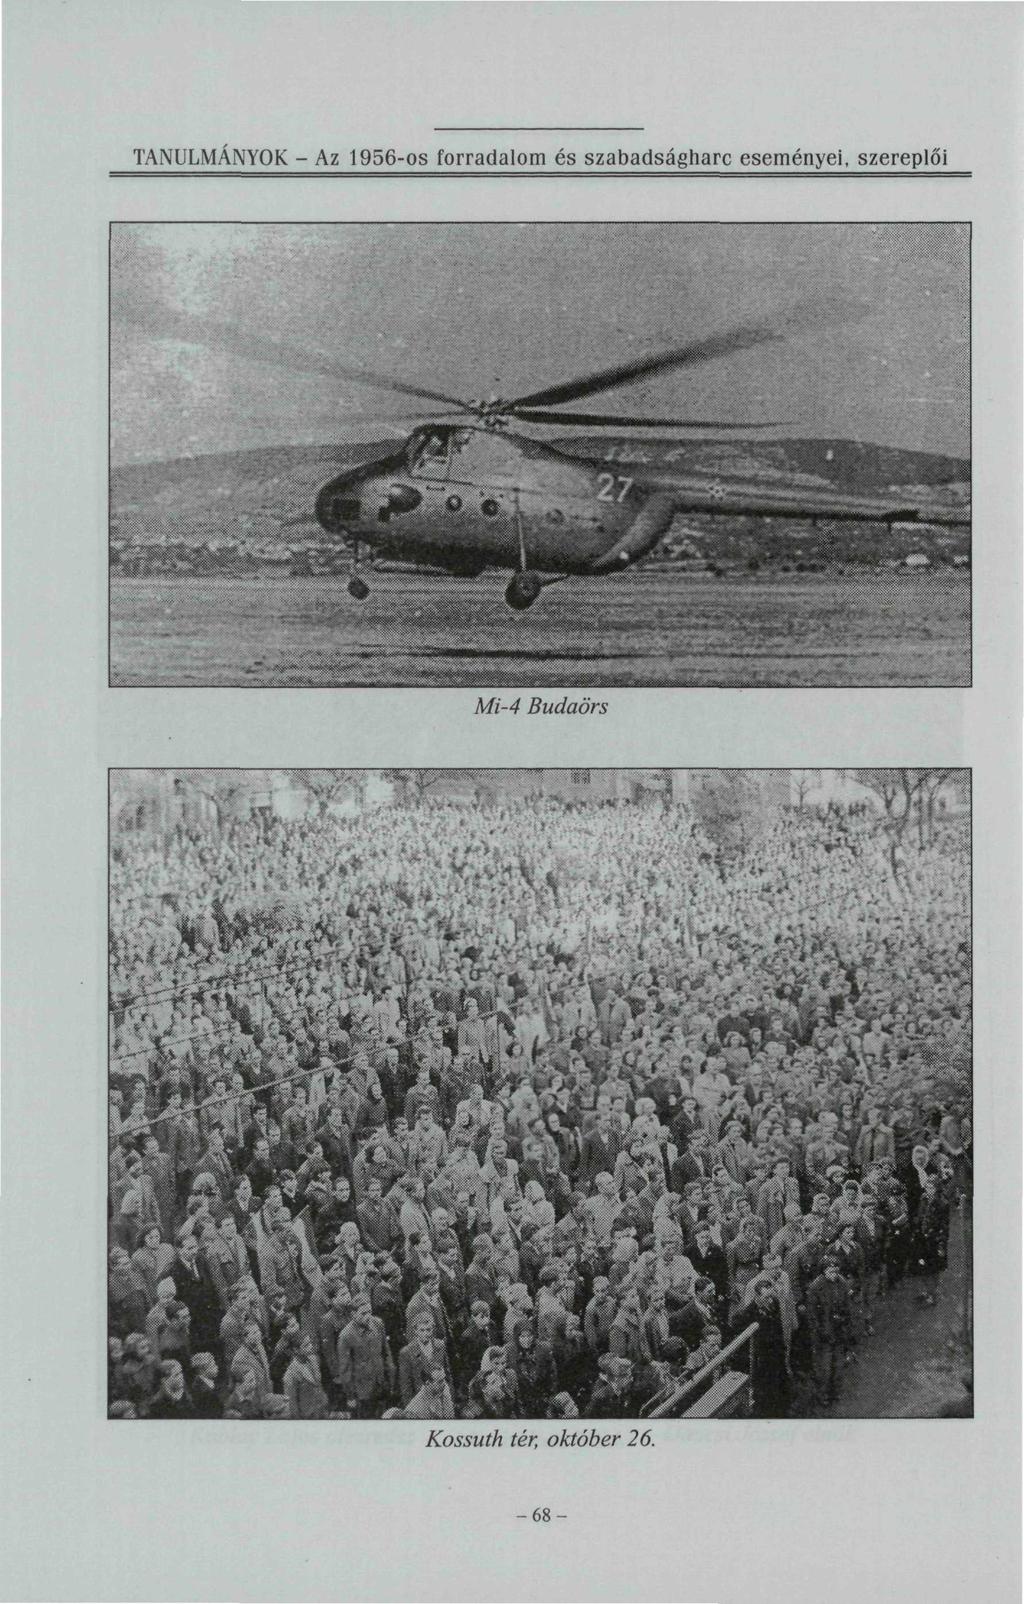 TANULMÁNYOK - Az 1956-os forradalom és szabadságharc